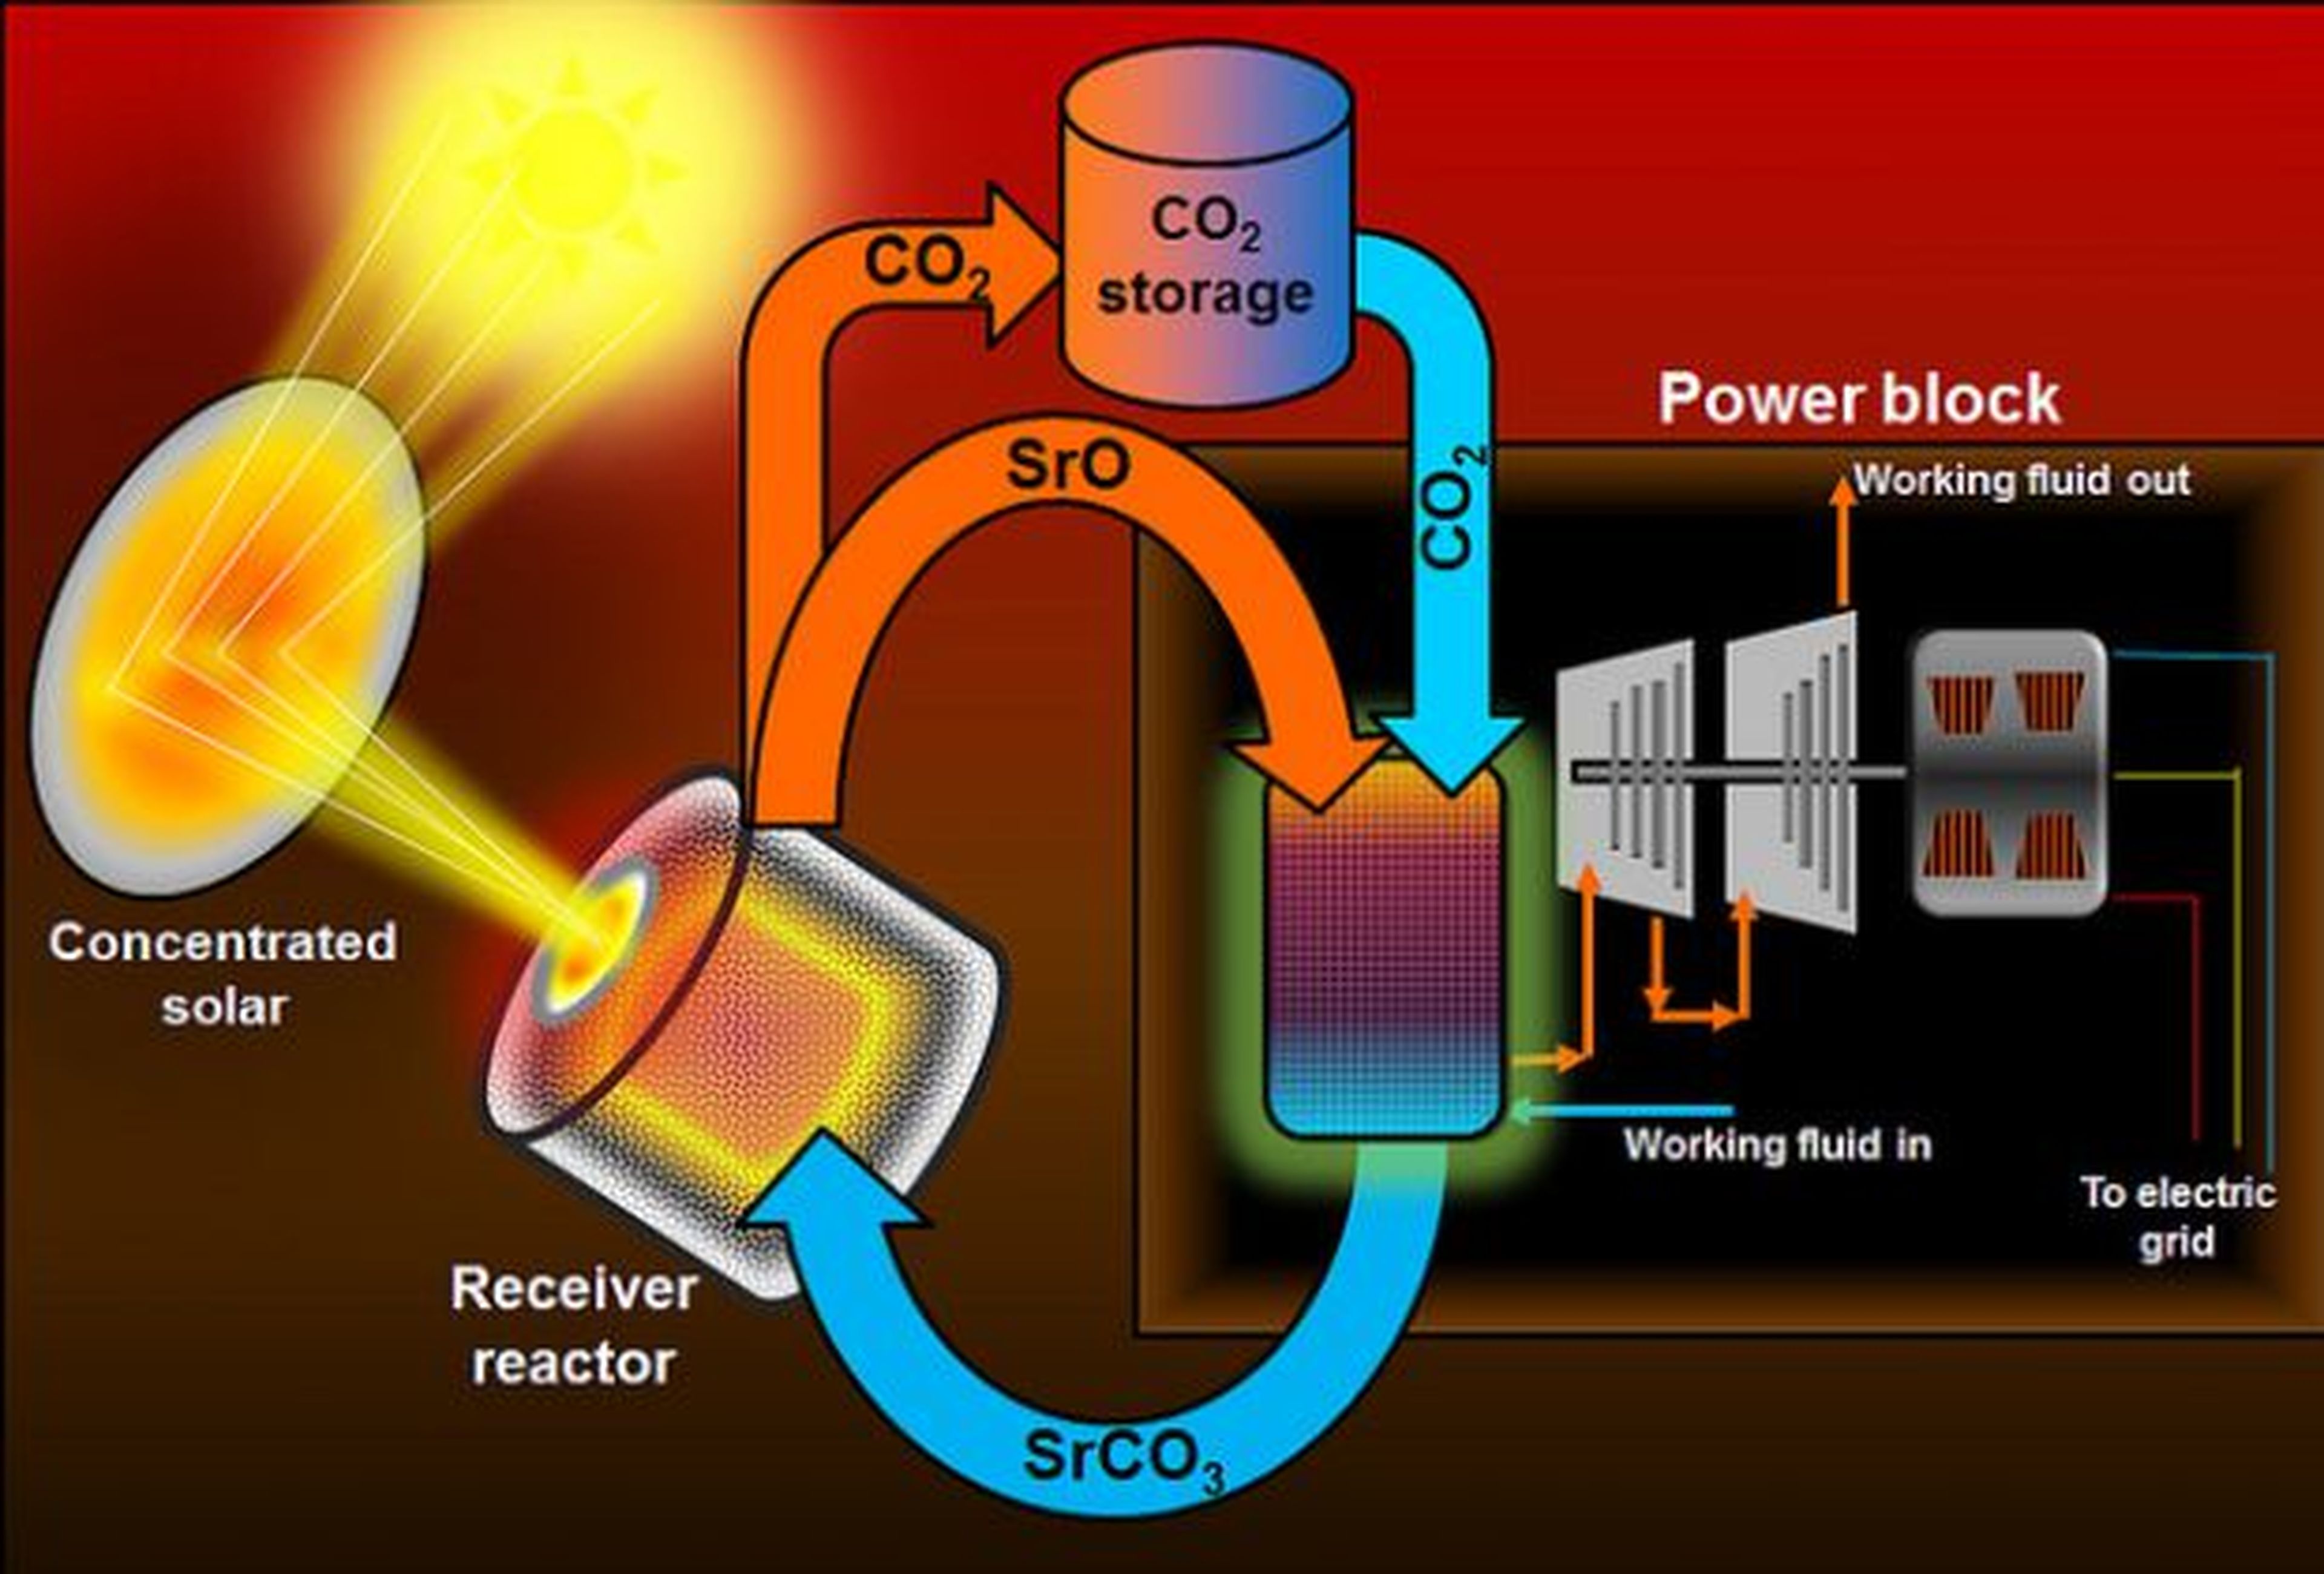 Sistema de baterías optimiza la energía solar concentrada